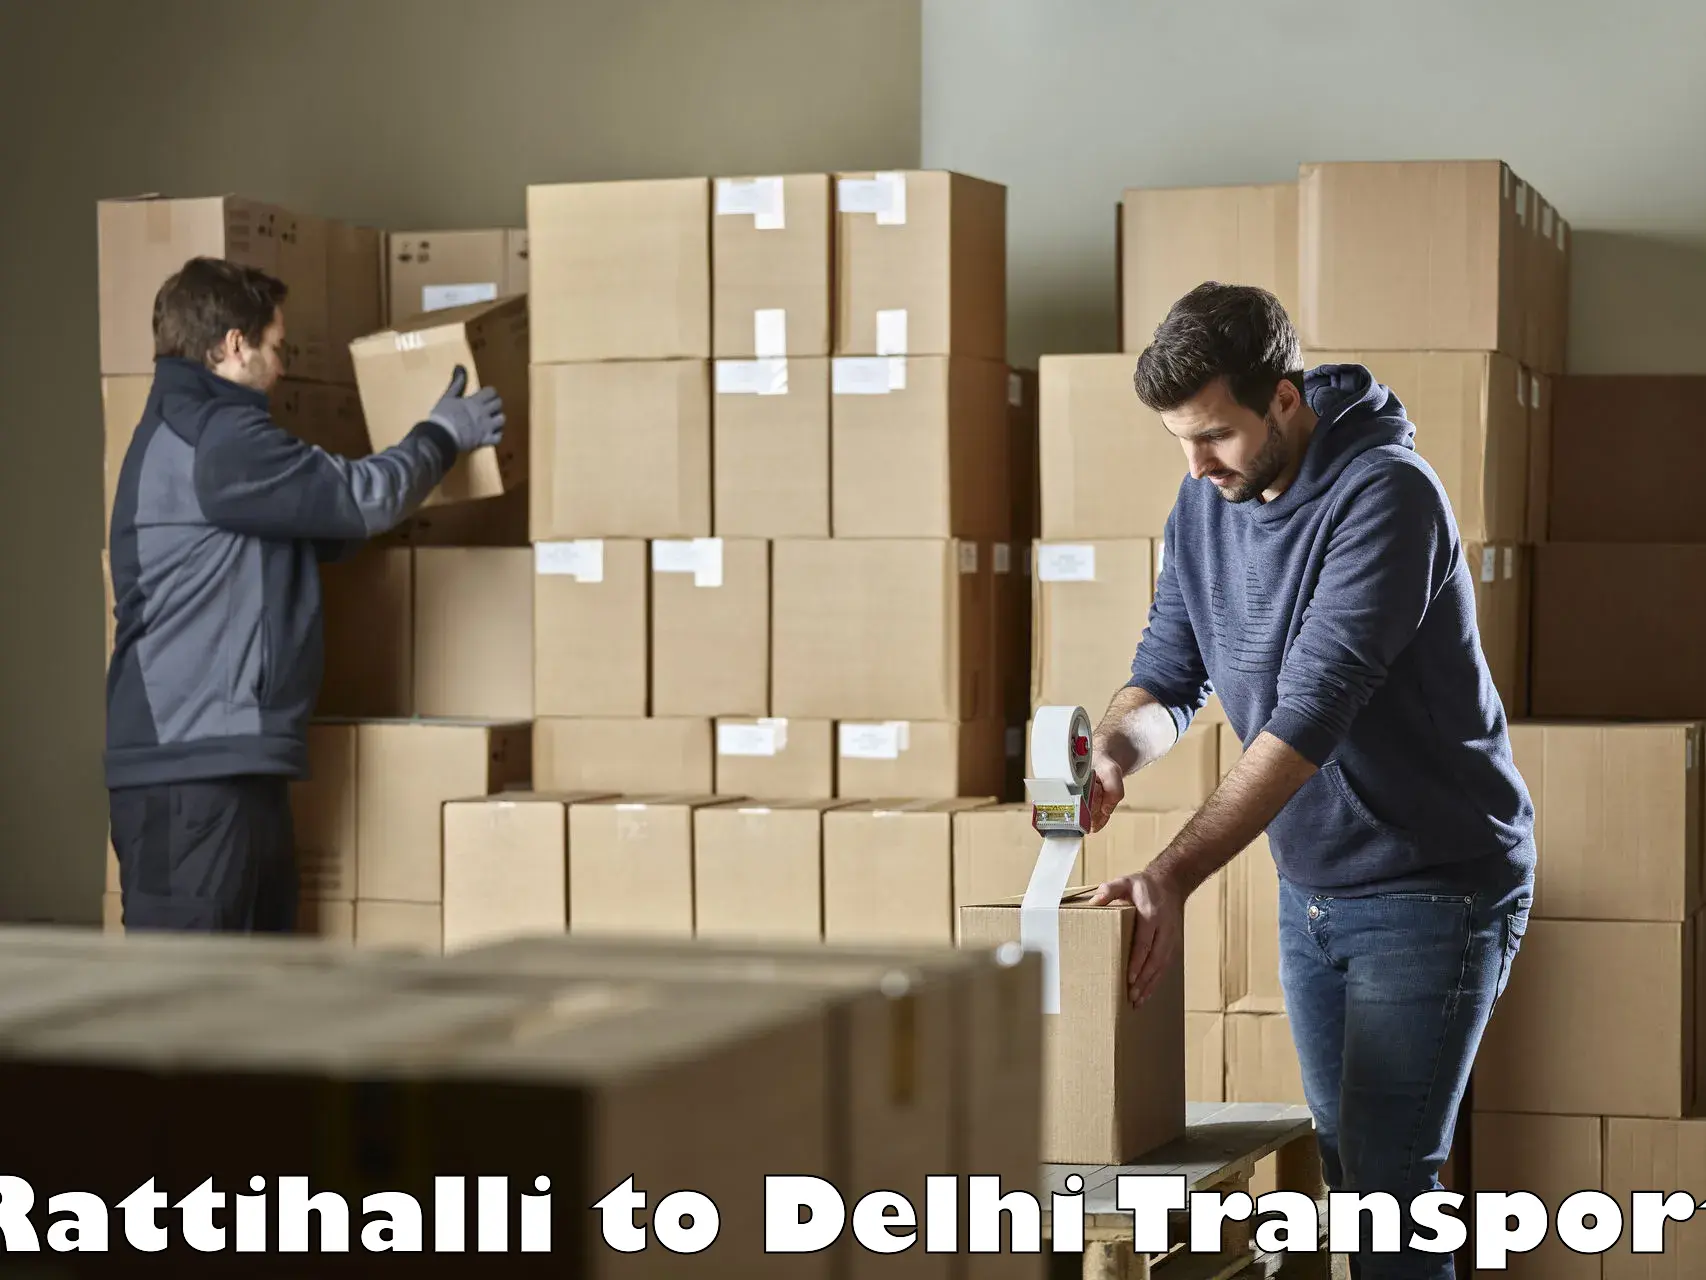 Bike shipping service Rattihalli to University of Delhi